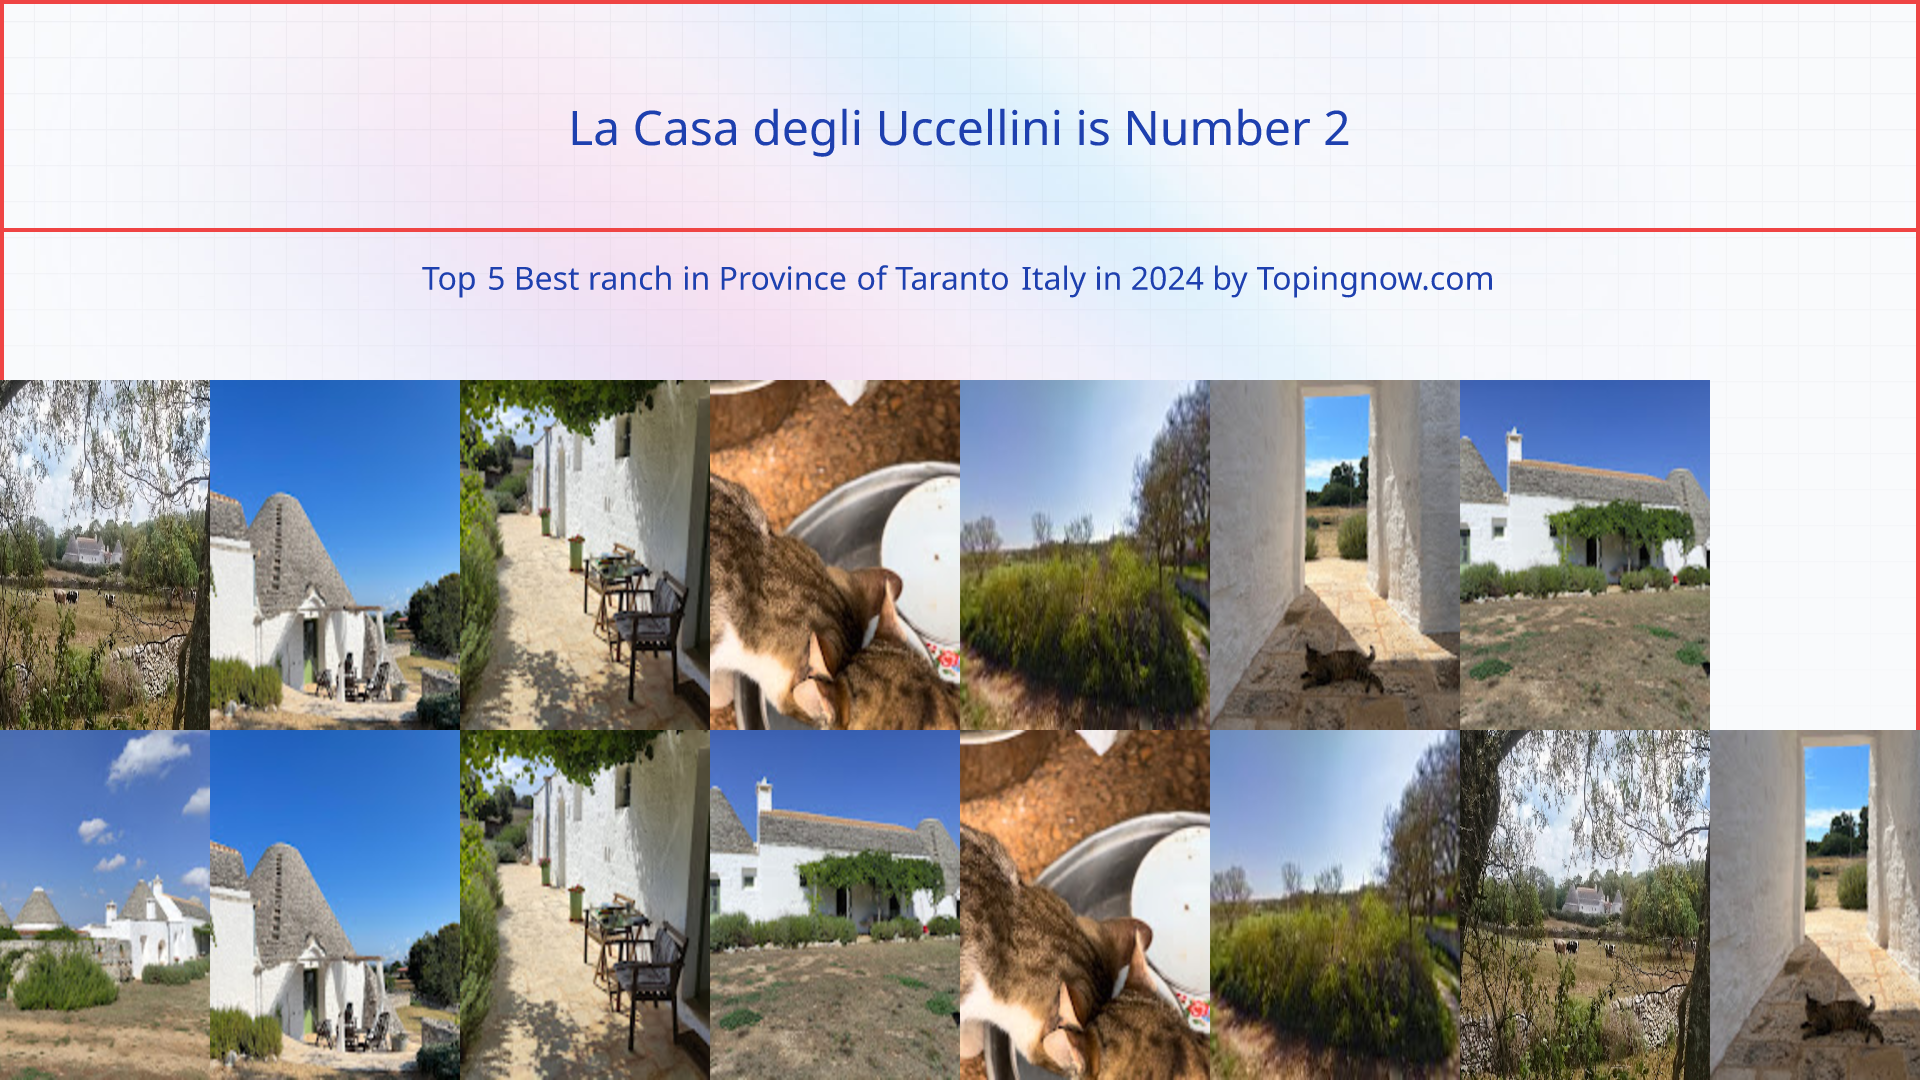 La Casa degli Uccellini: Top 5 Best ranch in Province of Taranto Italy in 2024